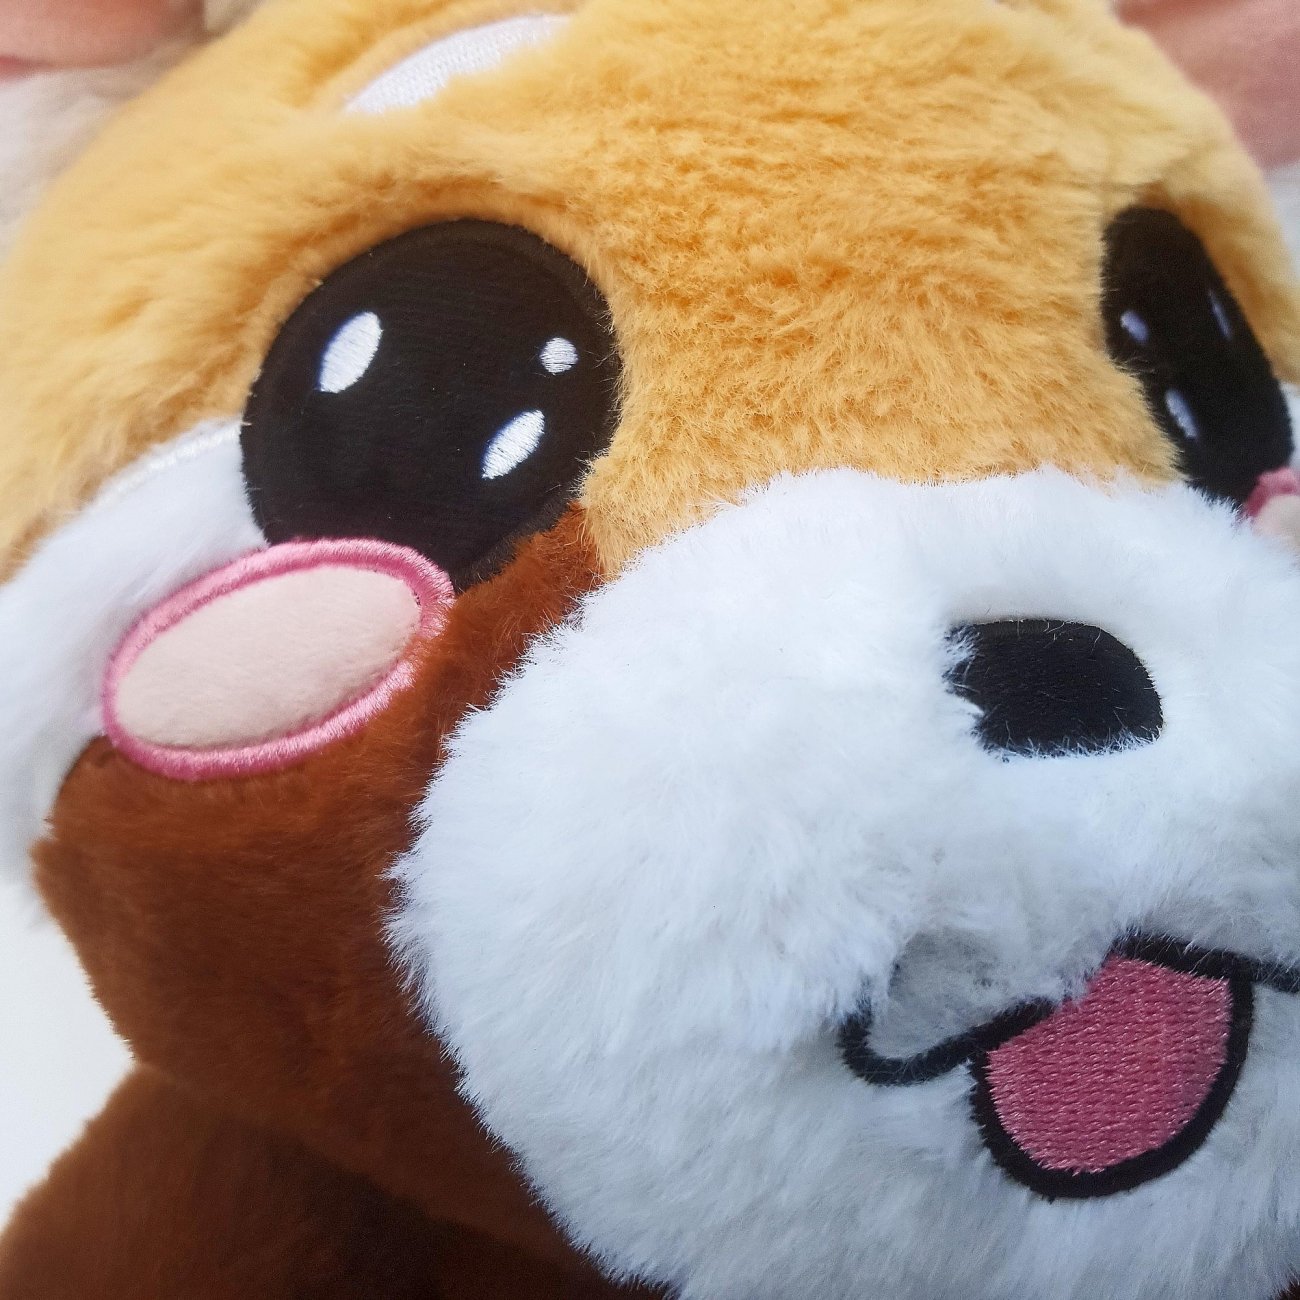 Plush Toy Face Red Panda